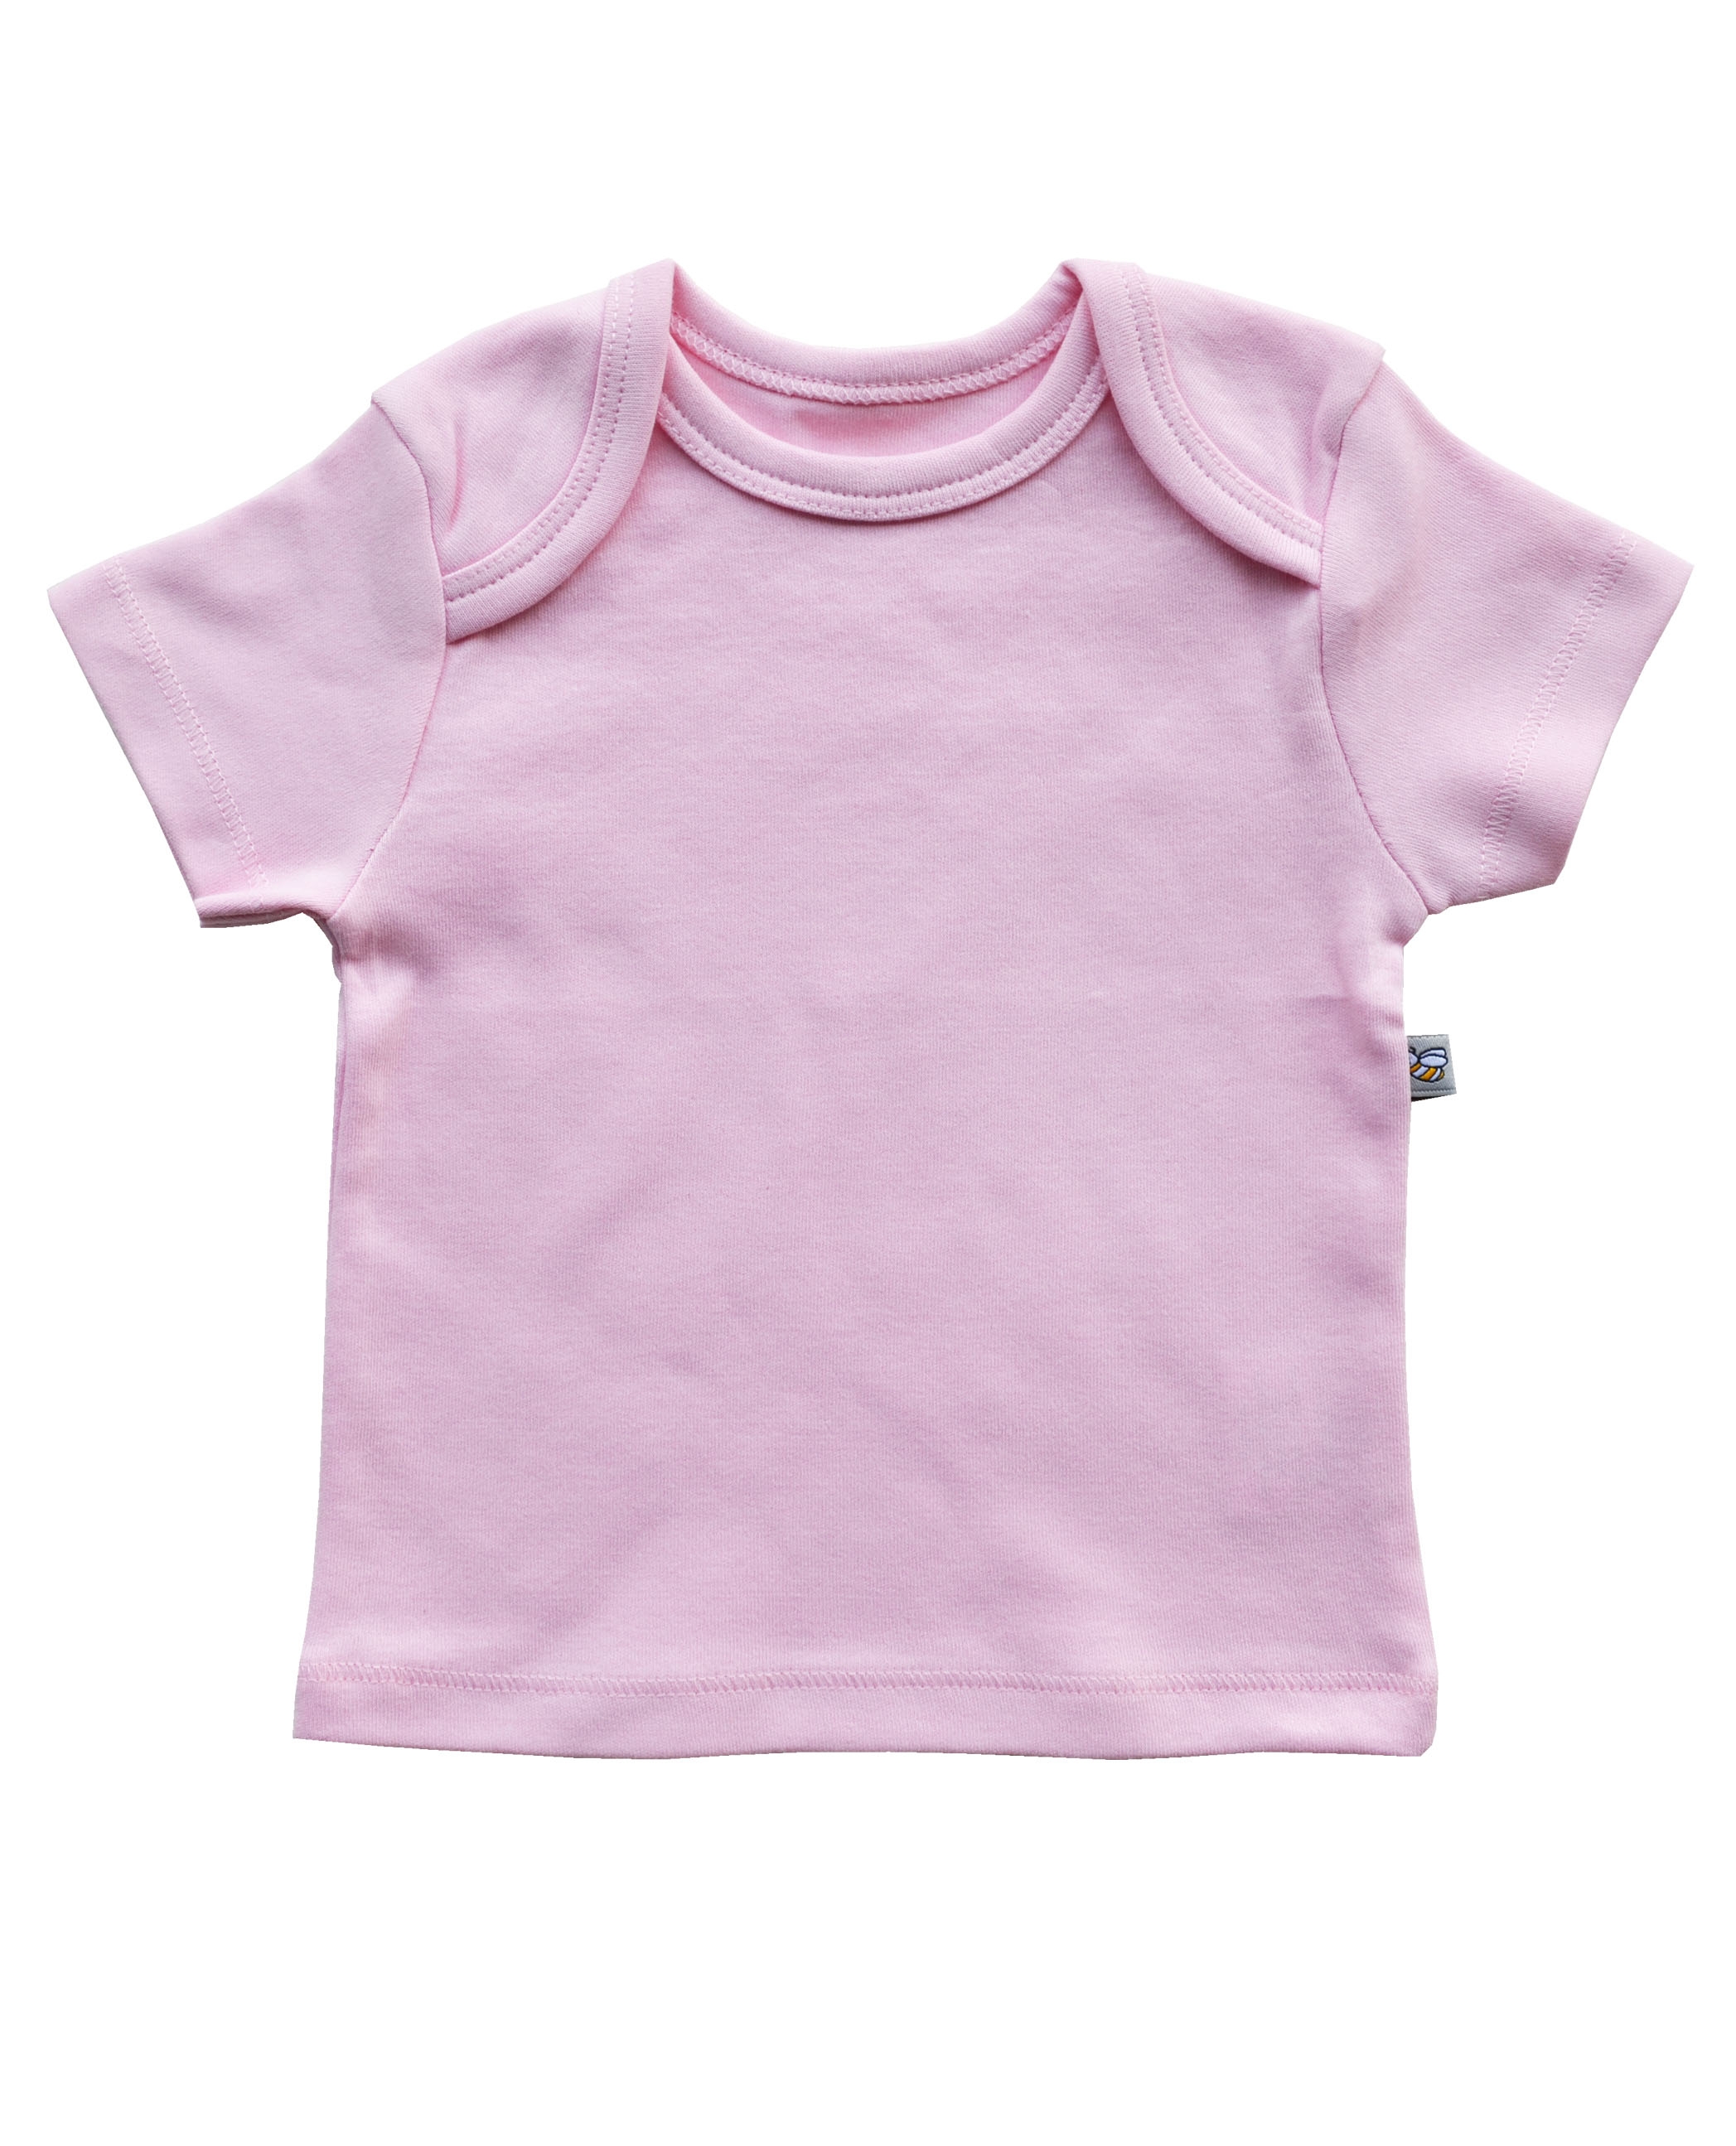 Pink Short Sleeve Top (100% Cotton Interlock Biowash)